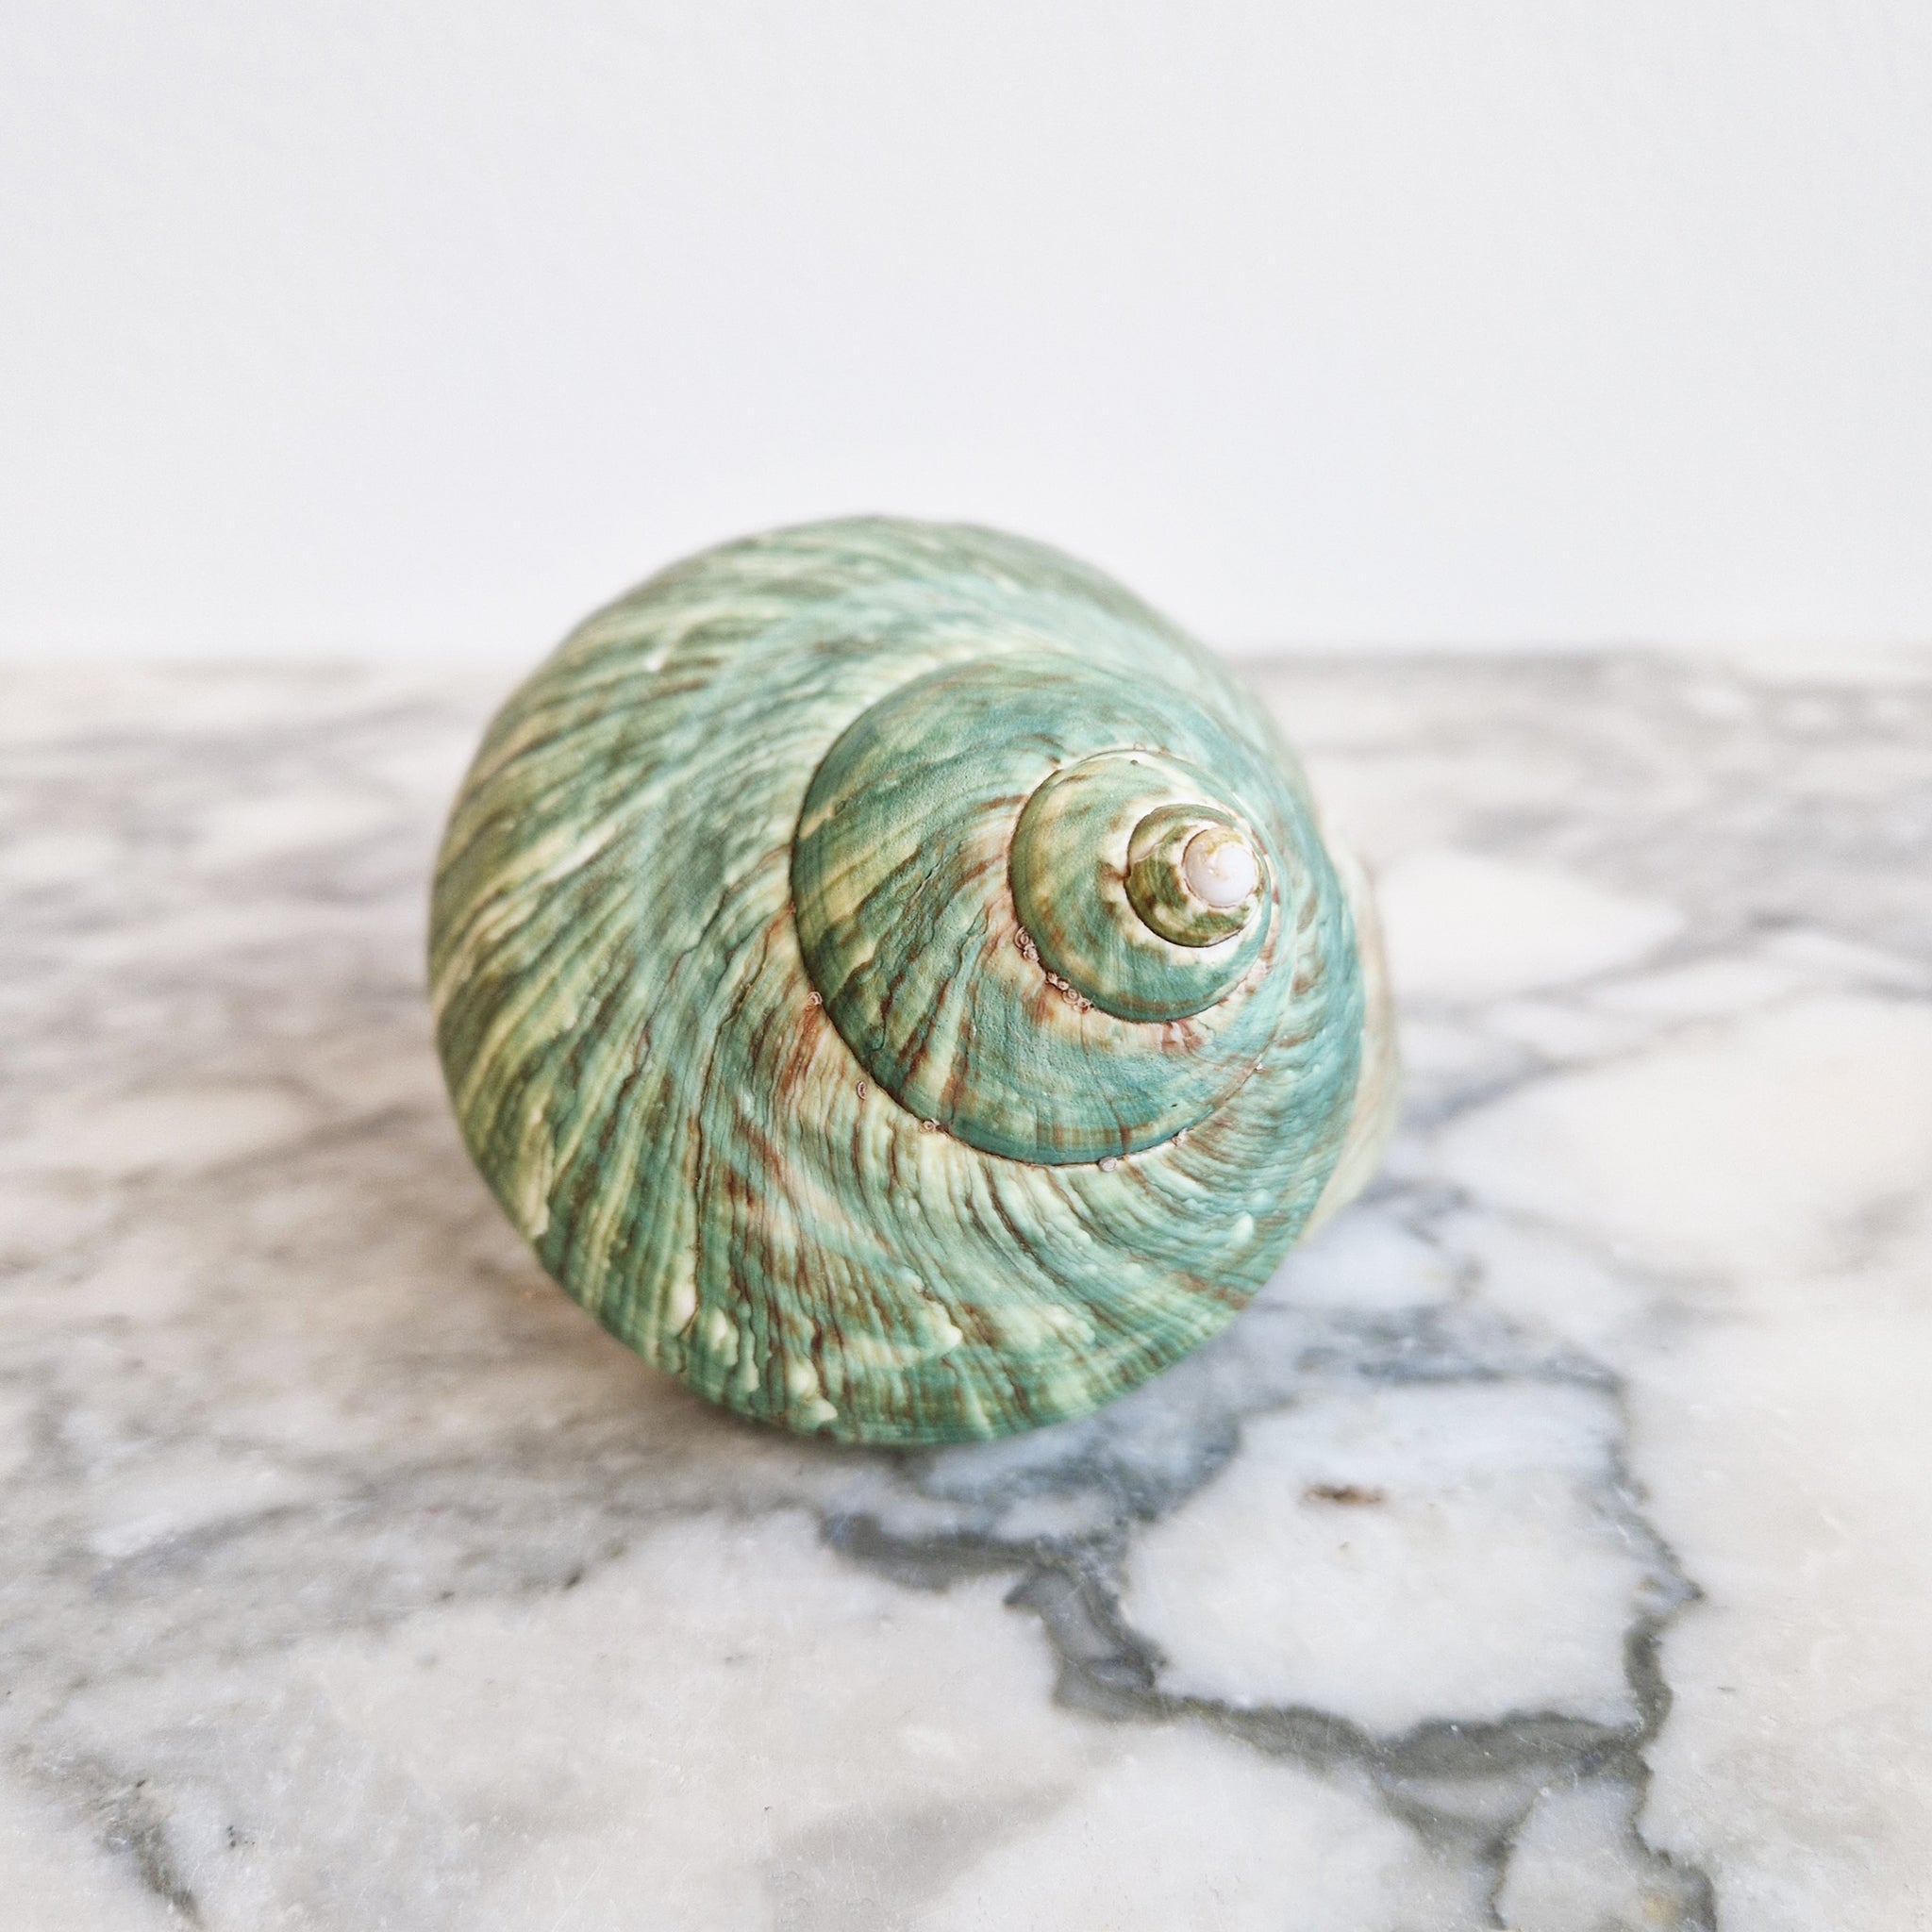 Vintage Turbo Imperialis seashell